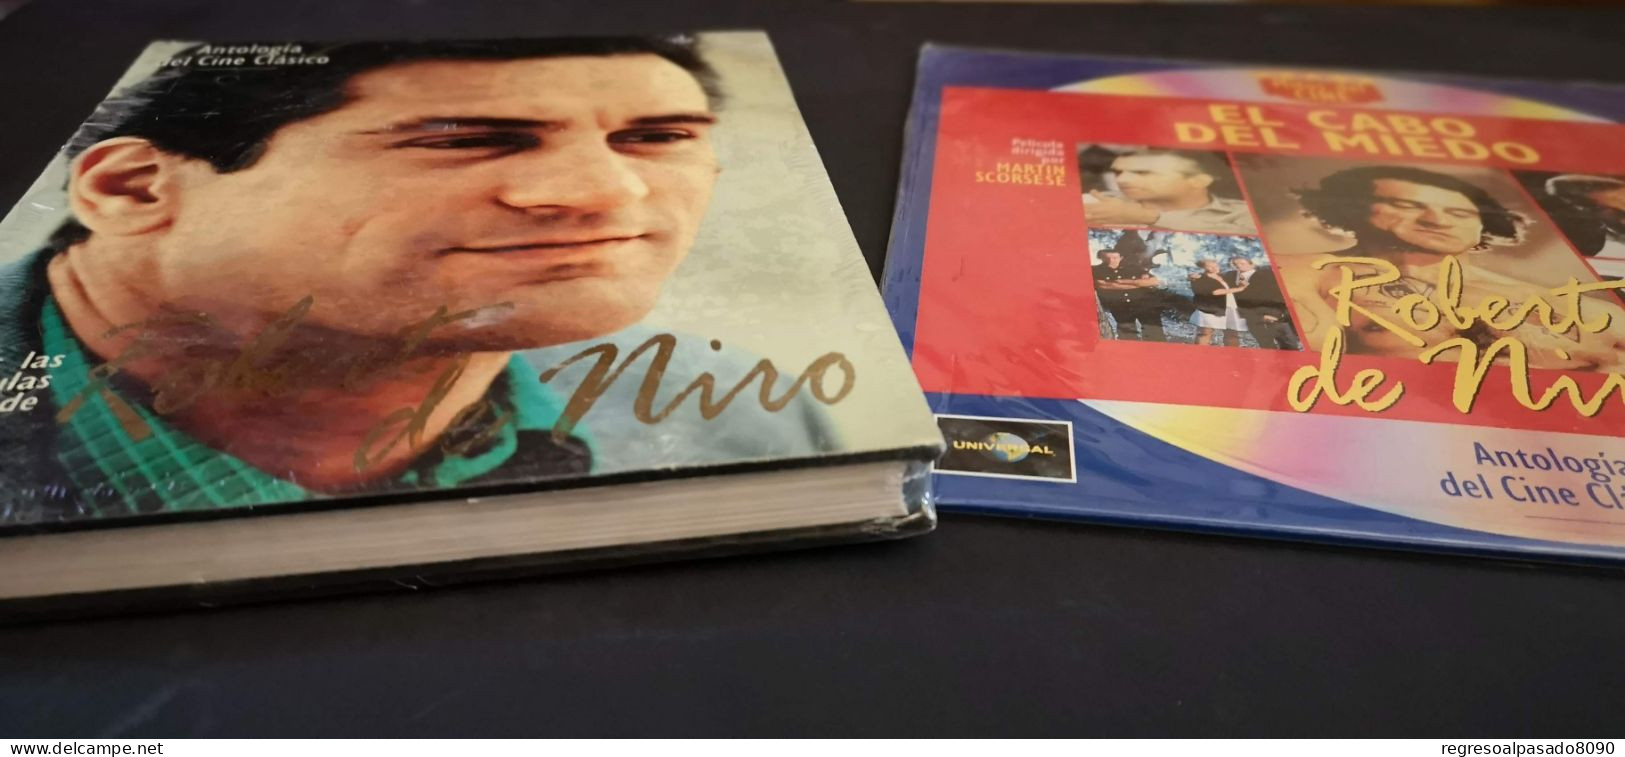 Robert De Niro Libro Y Película Laser Disc Laserdisc El Cabo Del Miedo. Mitos Del Cine Planeta Años 90 - Classiques